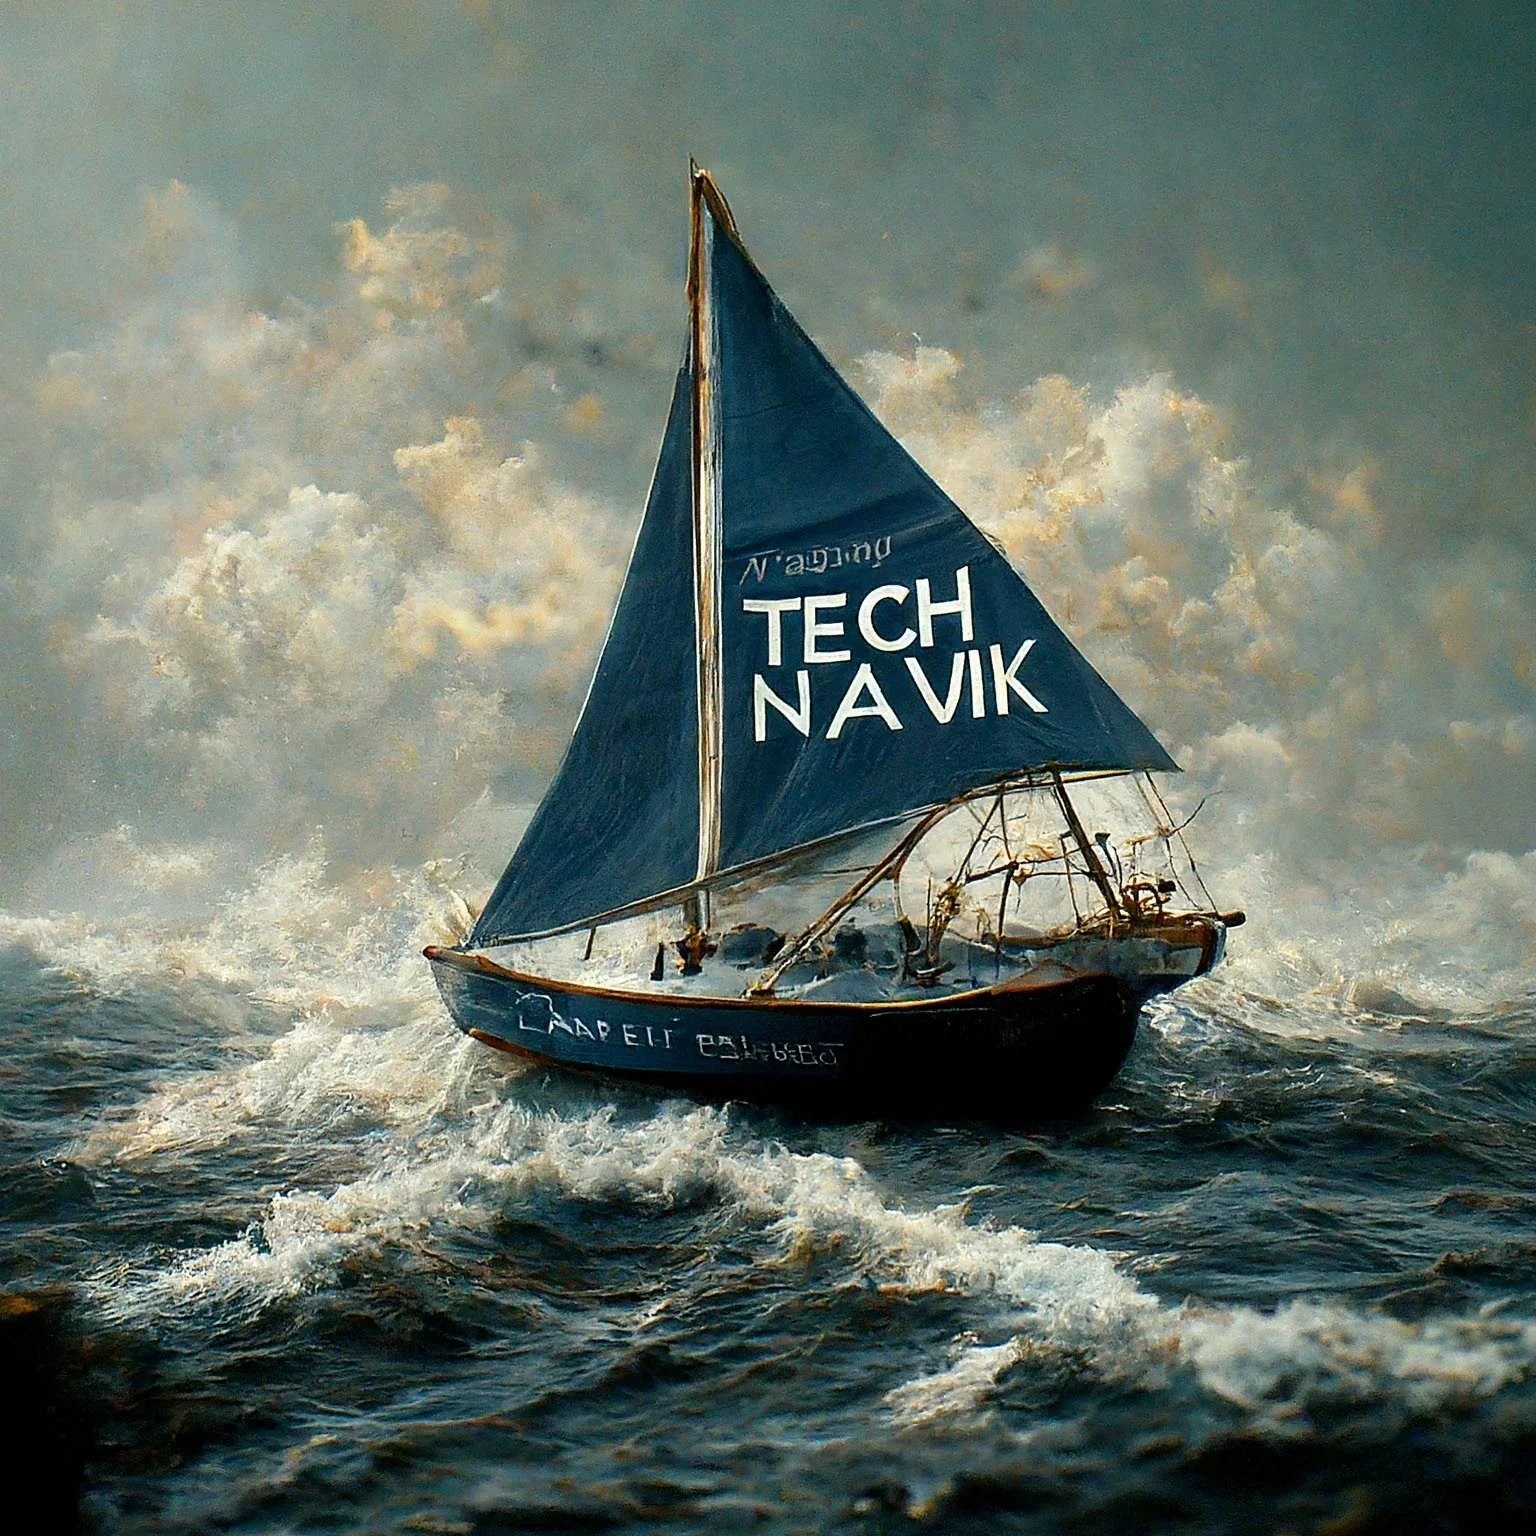 Tech Navik : Sailing Through Tech Challenges